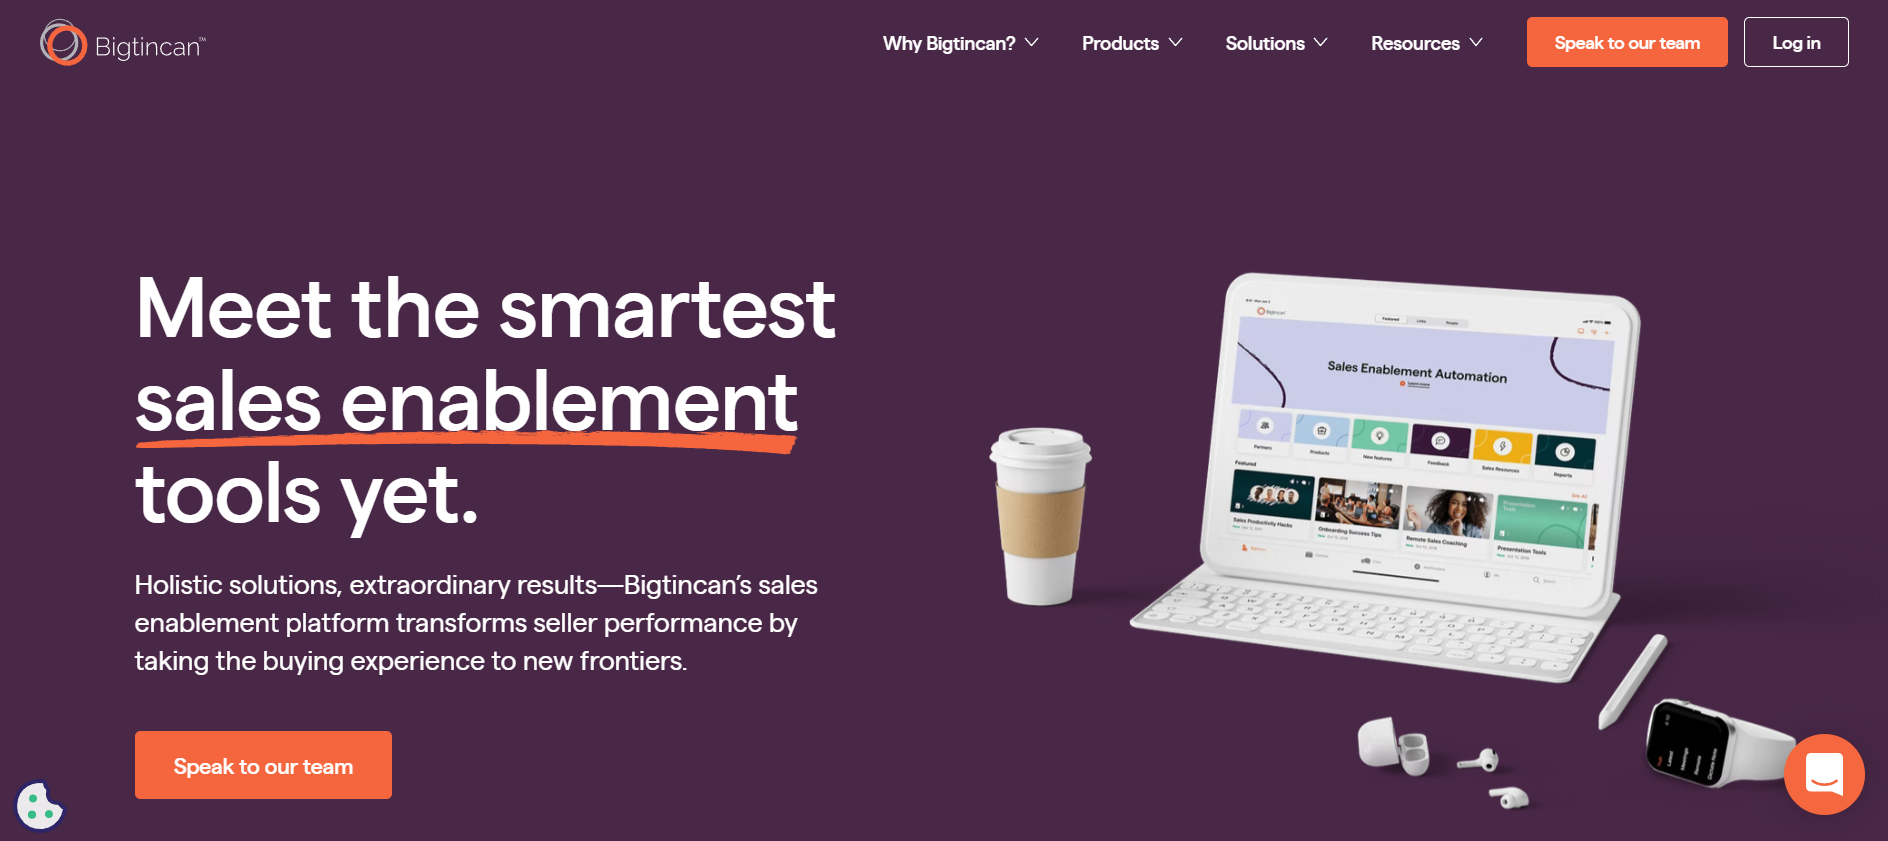 Bigtincan homepage: Meet the smartest sales enablement tools yet.